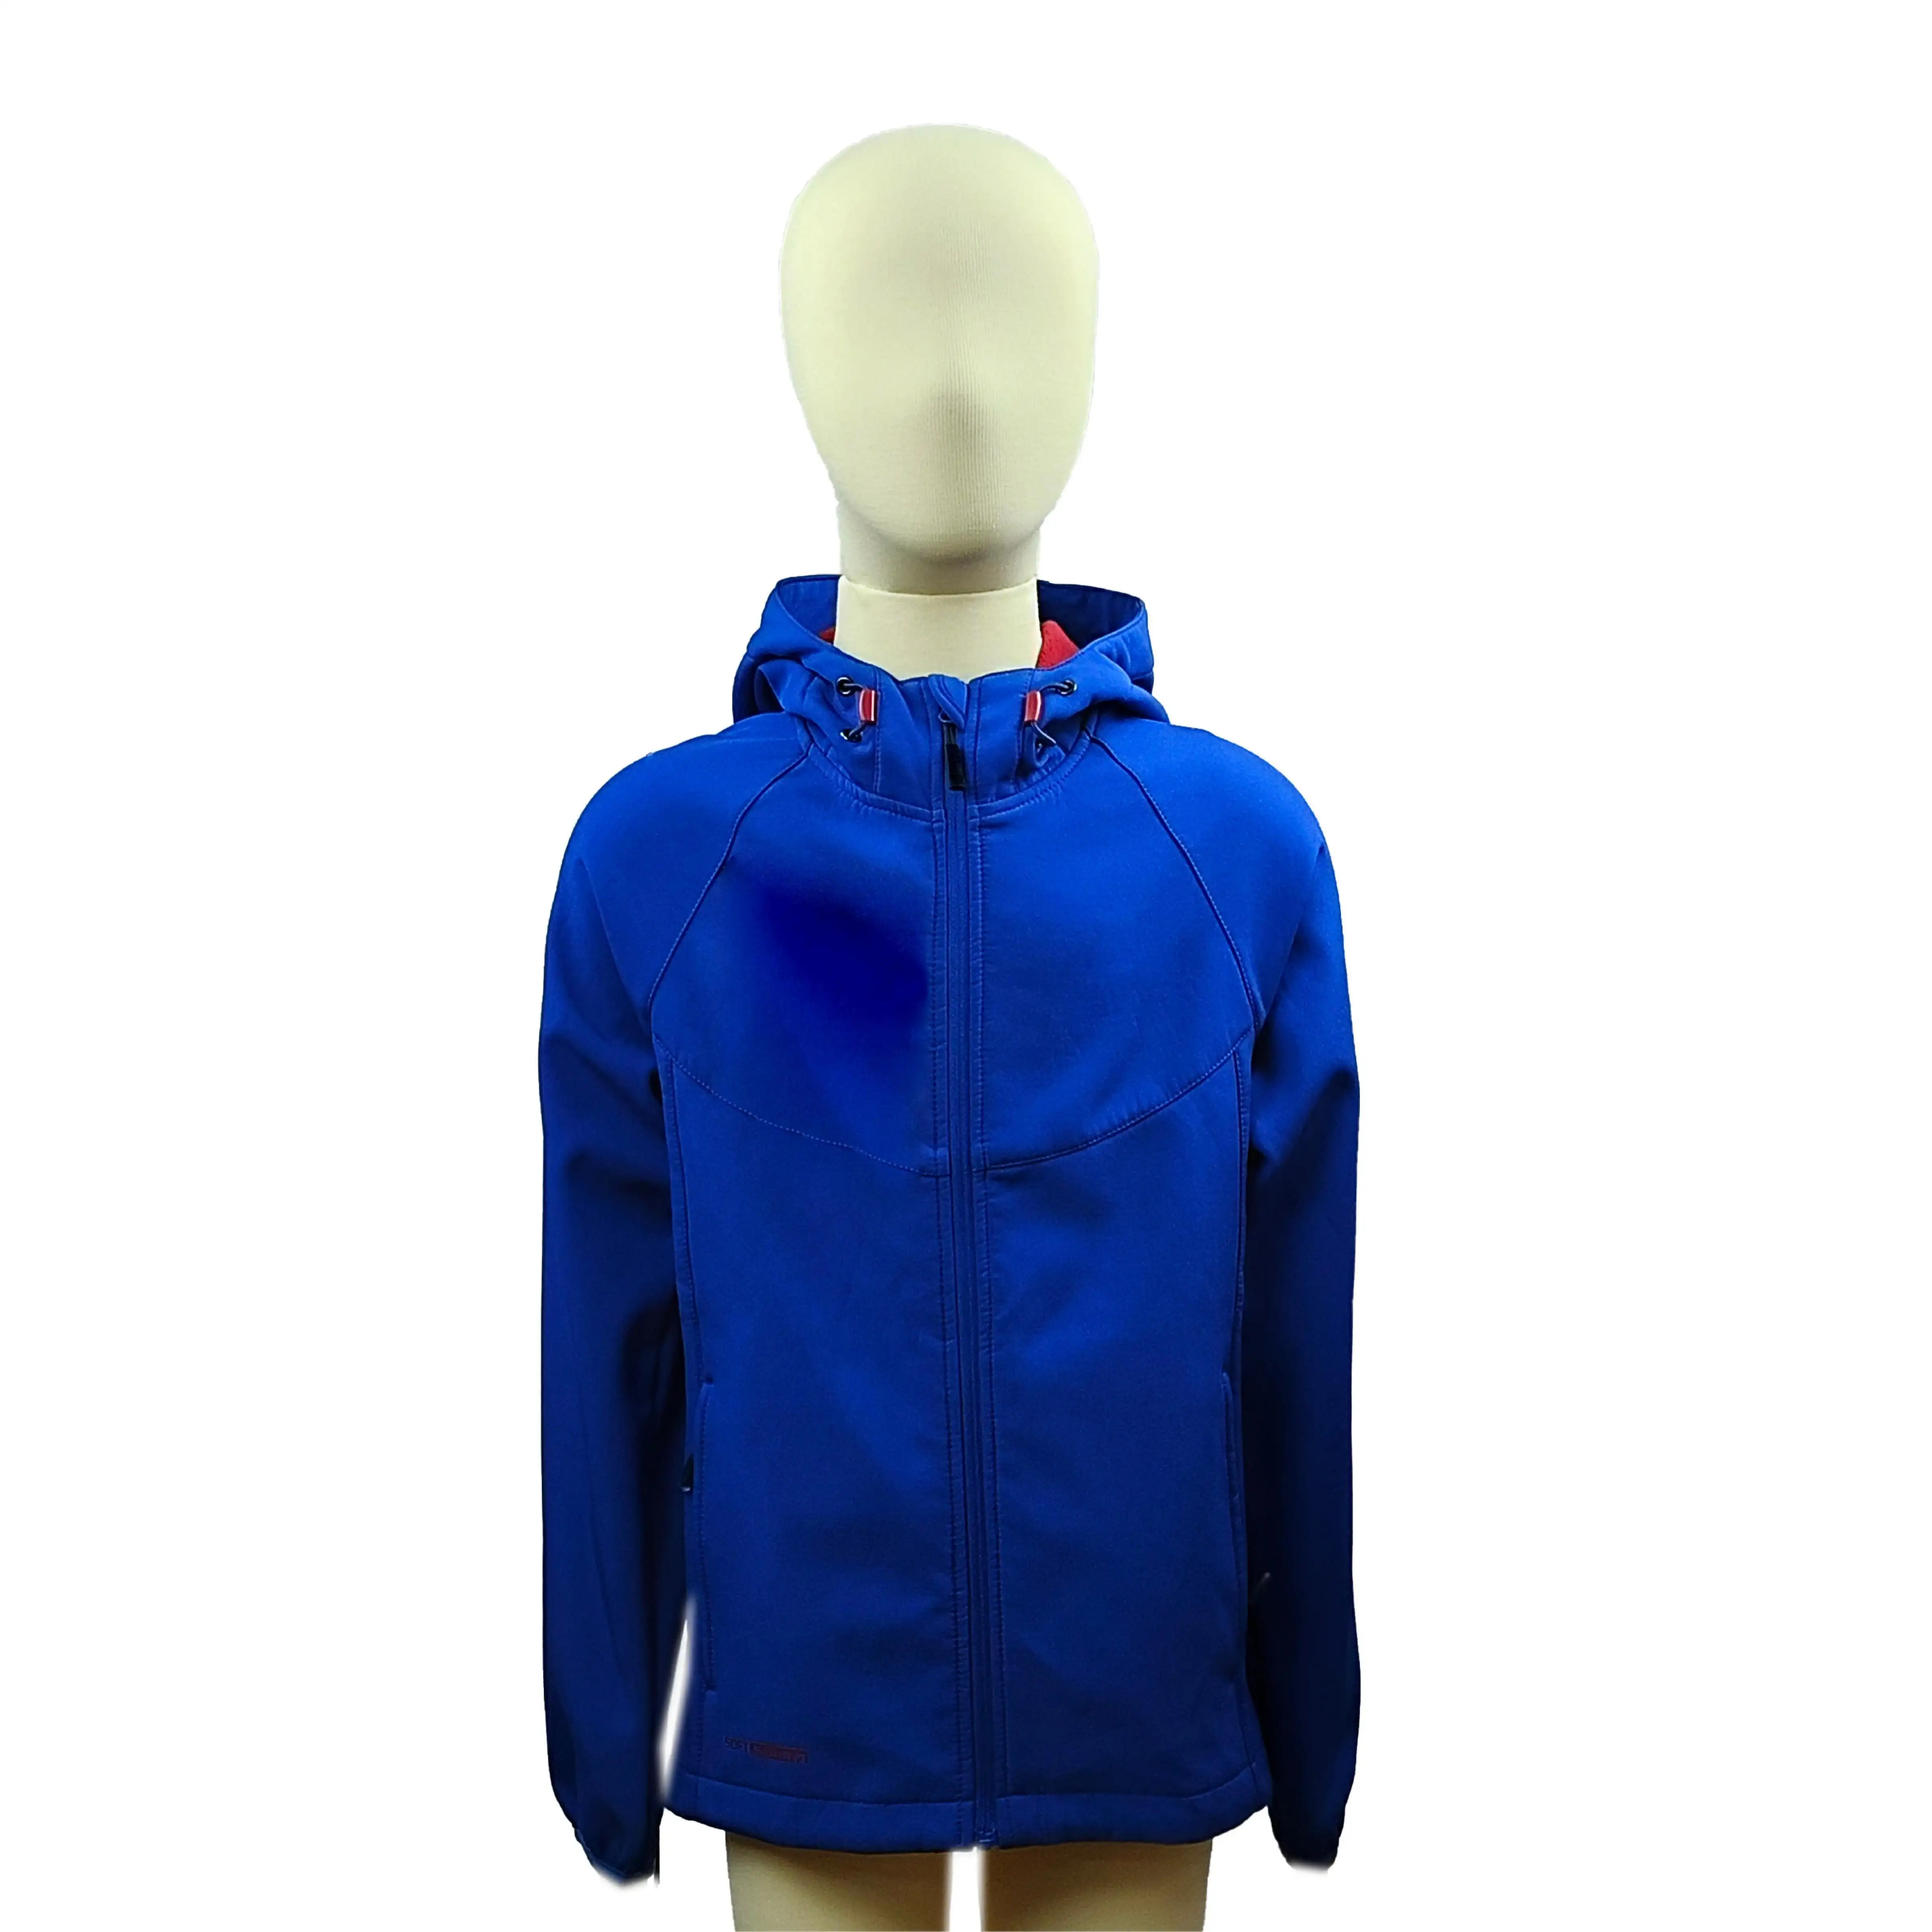 Jaket cangkang lunak tahan air anak-anak Set pakaian kustom modis untuk anak laki-laki diproduksi oleh pakaian anak-anak